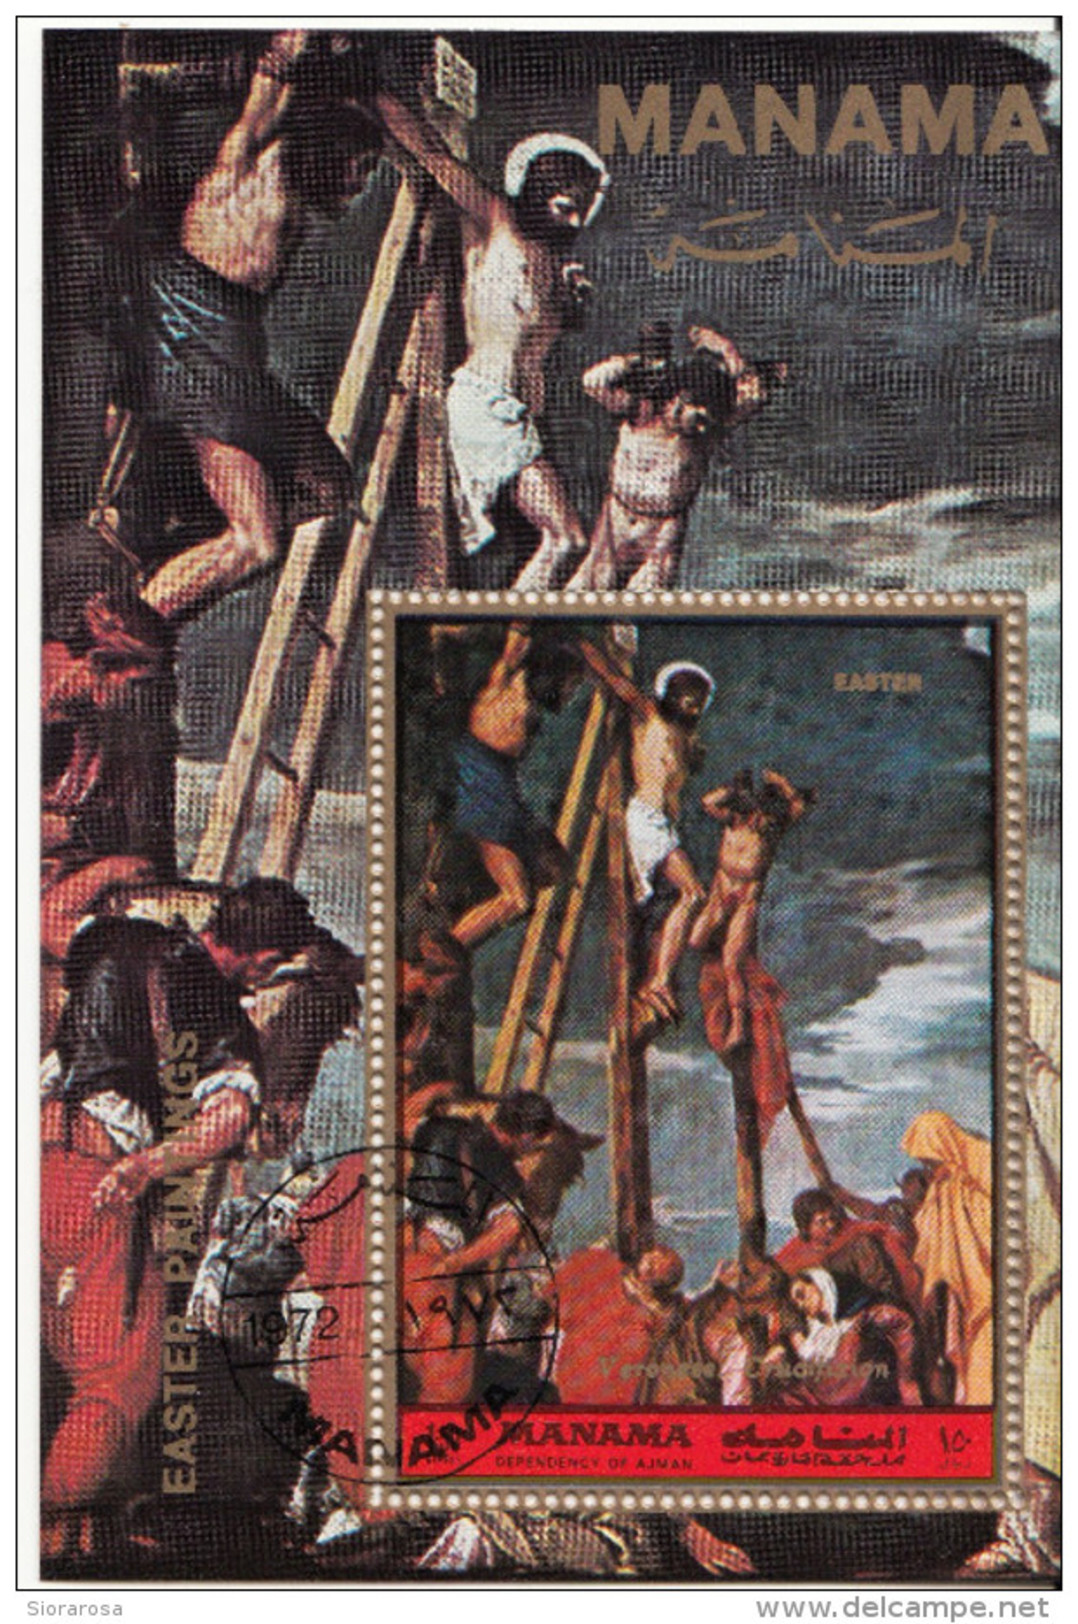 Manama 1972 "La Crocifissione" Quadro Dipinto Dal Veronese Paintings Manierismo Vangeli Easter - Quadri